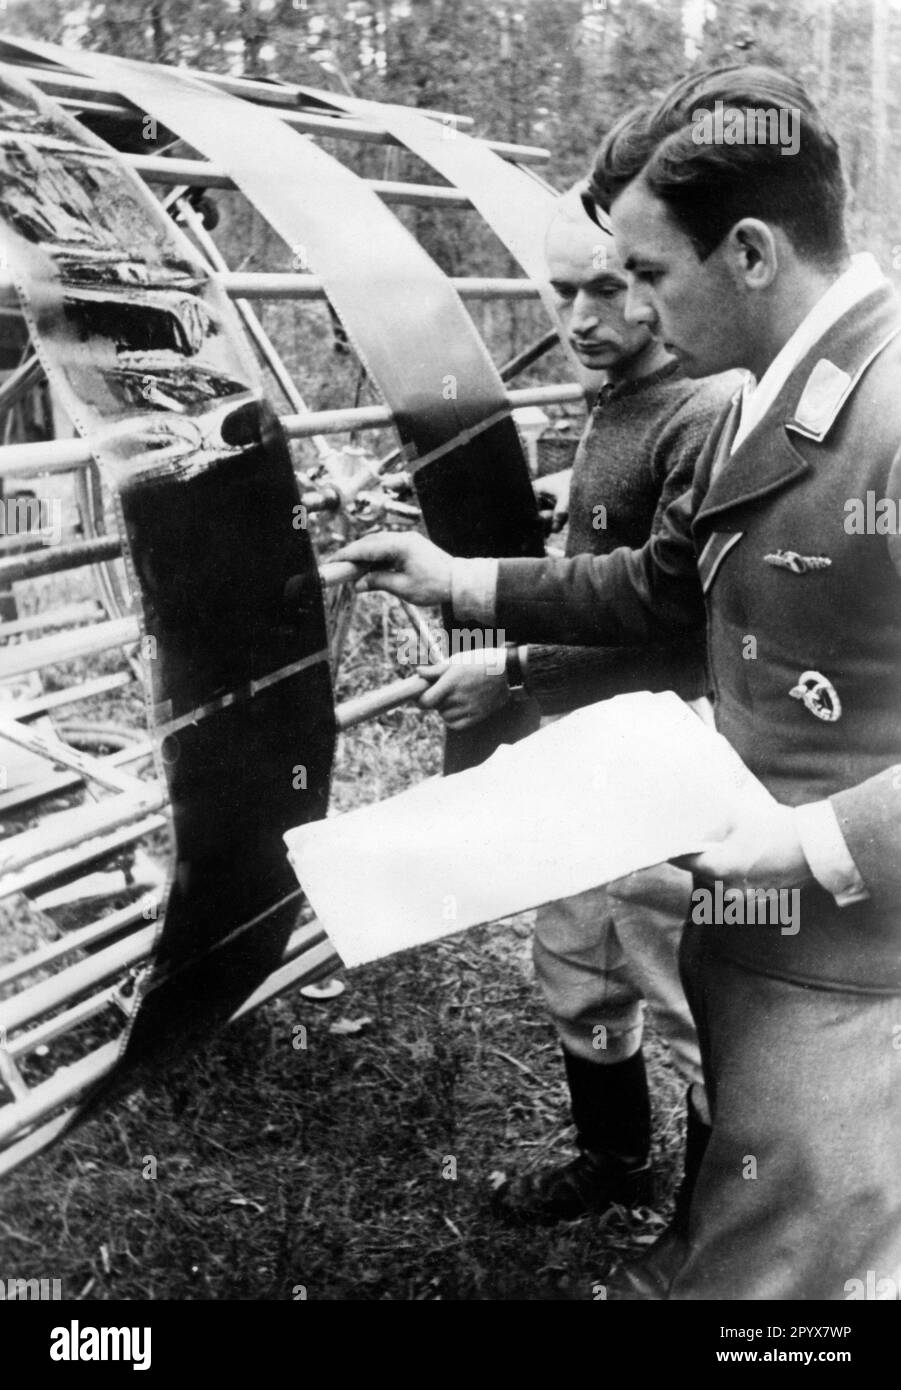 Soldados de la Luftwaffe alemana frente a un tambor de secado en el que se estiran las imágenes de un avión de reconocimiento. Antes del ataque a la Unión Soviética, las posiciones de las tropas soviéticas eran intensamente reconocedoras. [traducción automatizada] Foto de stock